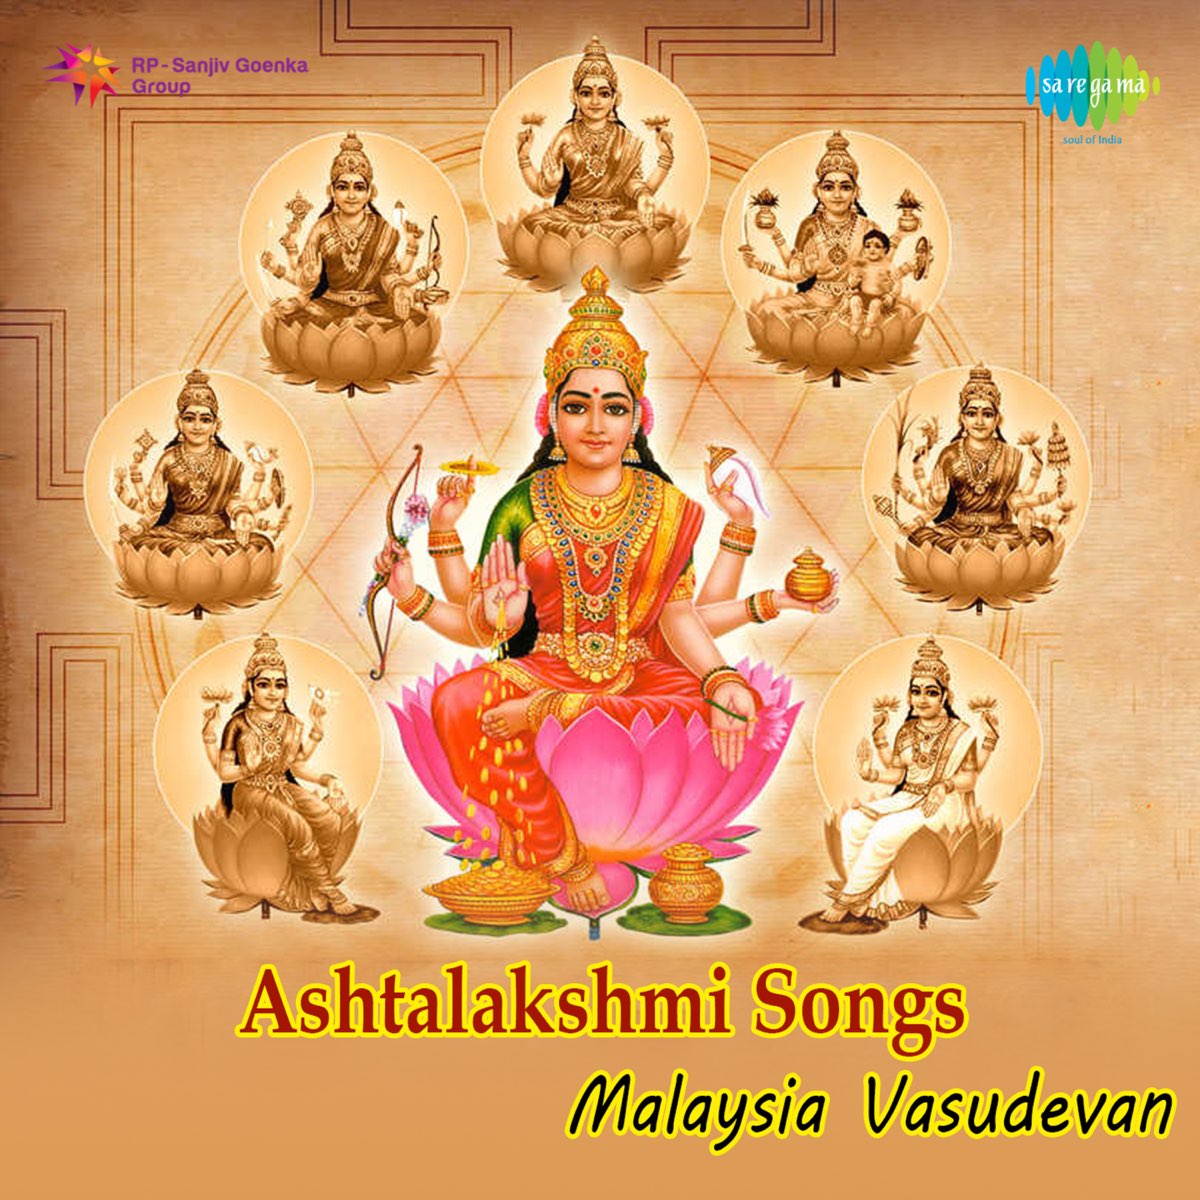 Ashtalakshmi Songs by Malaysia Vasudevan on Apple Music